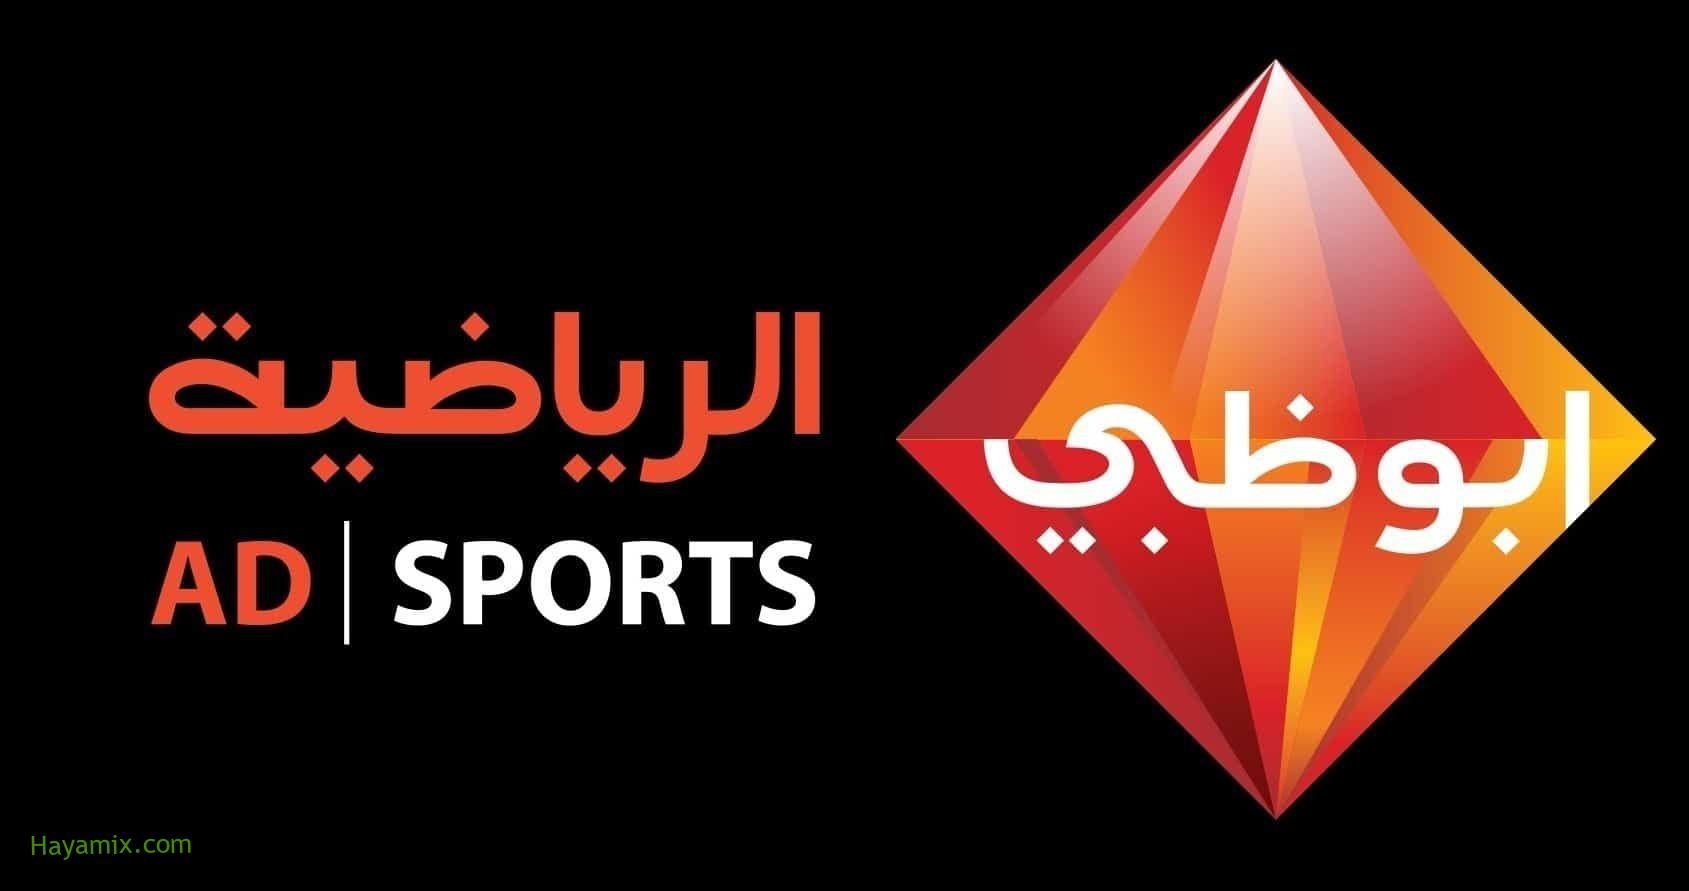 تردد قنوات أبو ظبي الرياضية 3 و 4 HD علي القمر الصناعي نايل سات وهوت بيرد Abu Dhabi Sport